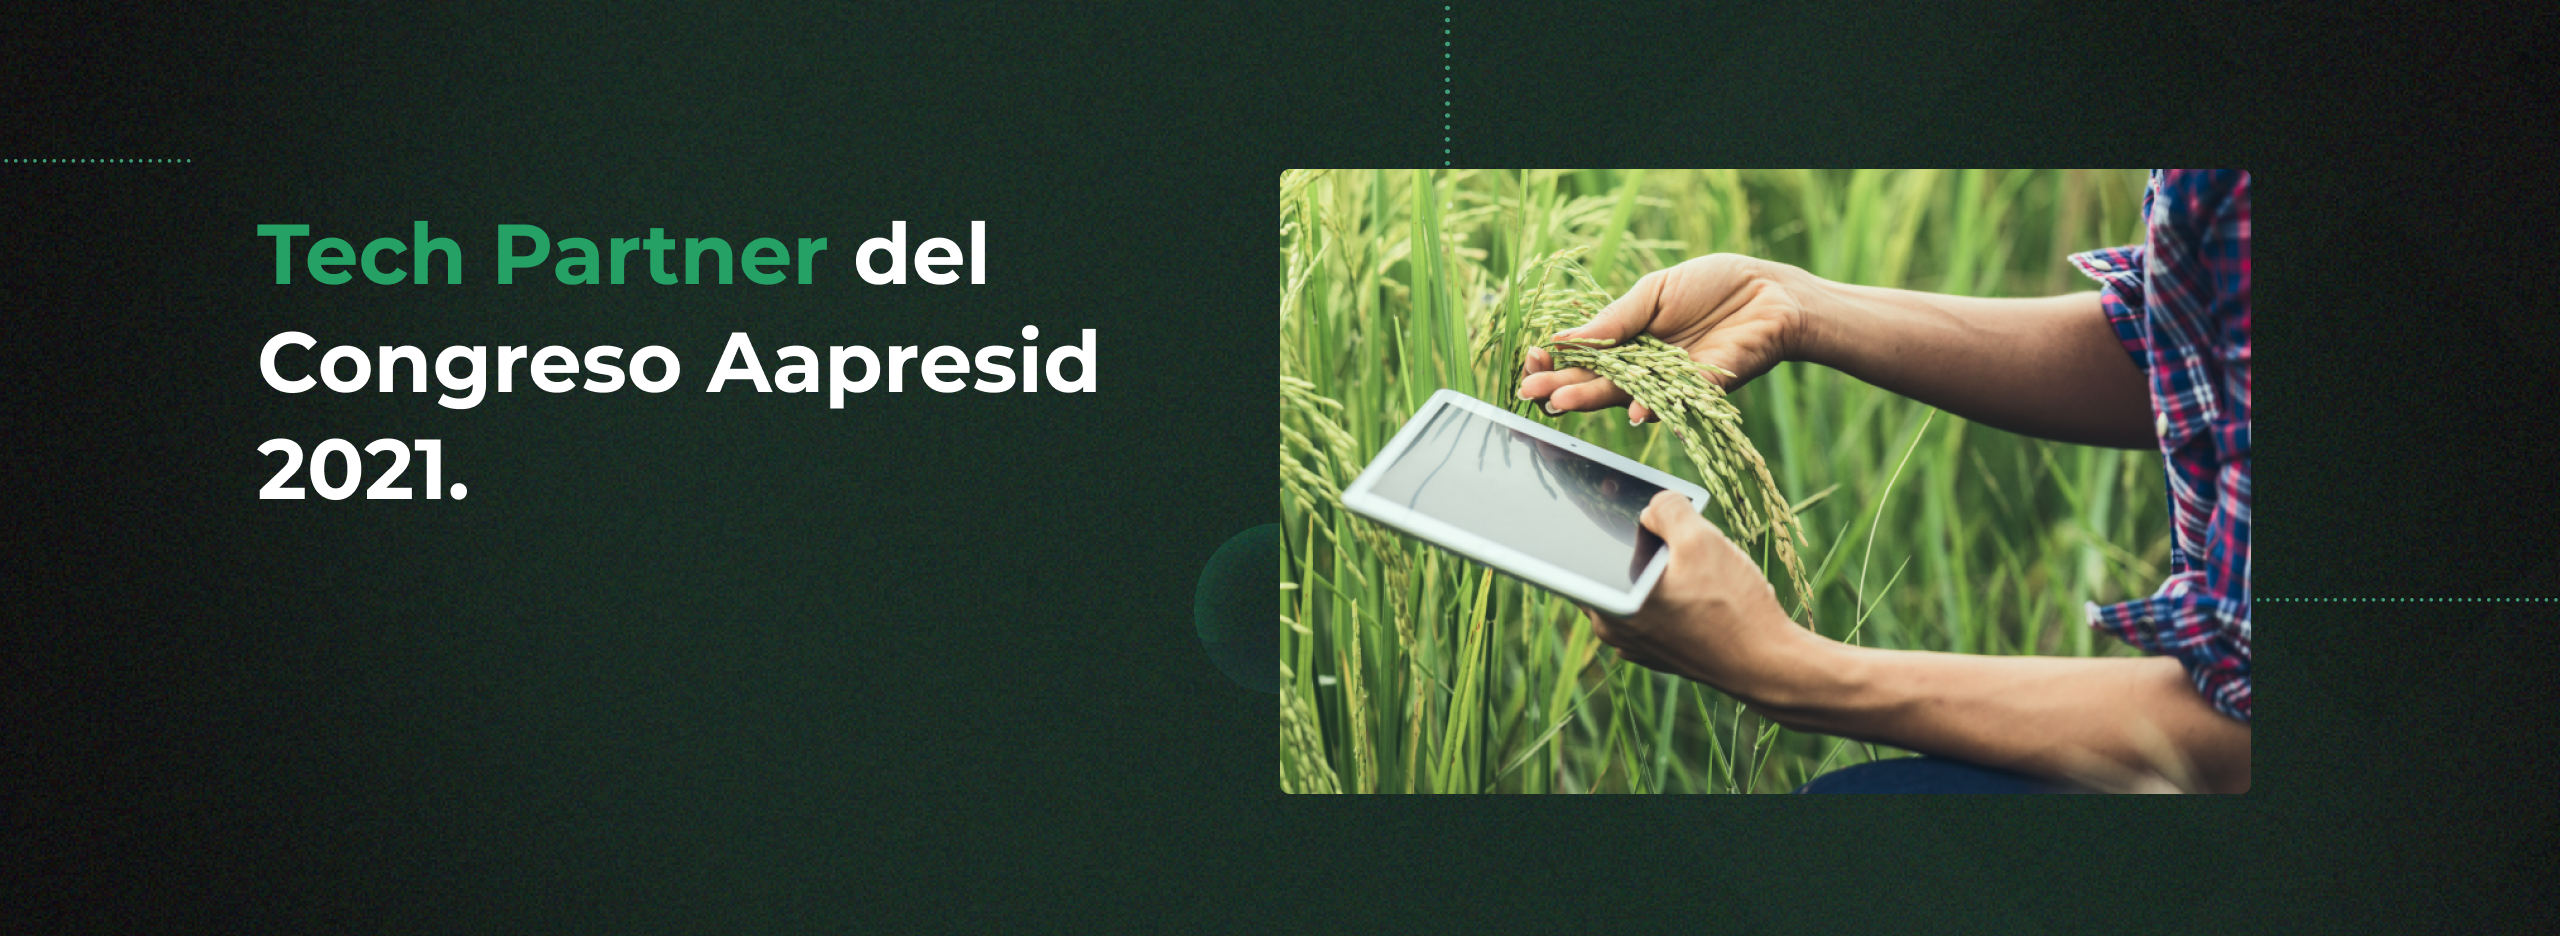 Congreso Aapresid 2021: acompañamos al gran evento del Agro desde la Tecnología